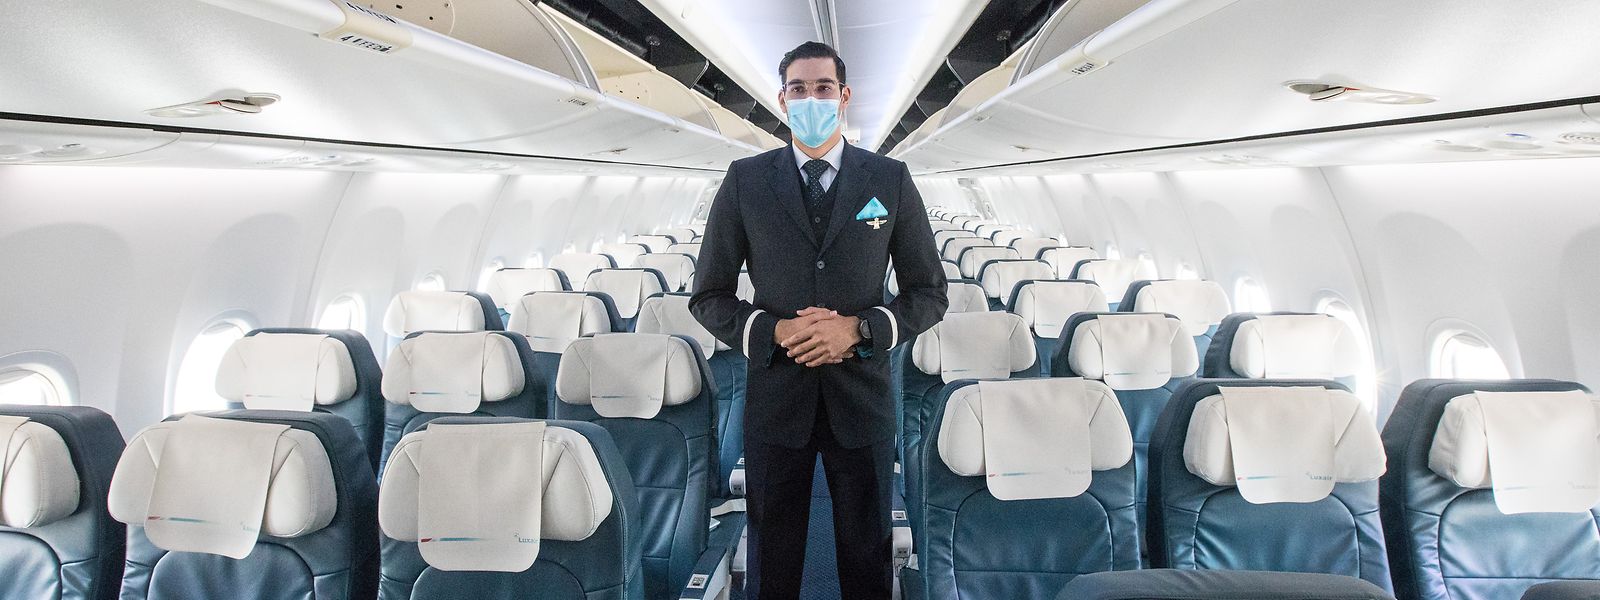 Atemschutzmasken, ständiges Desinfizieren und Luftaustausch - damit will Luxair das Reisen sicher machen.